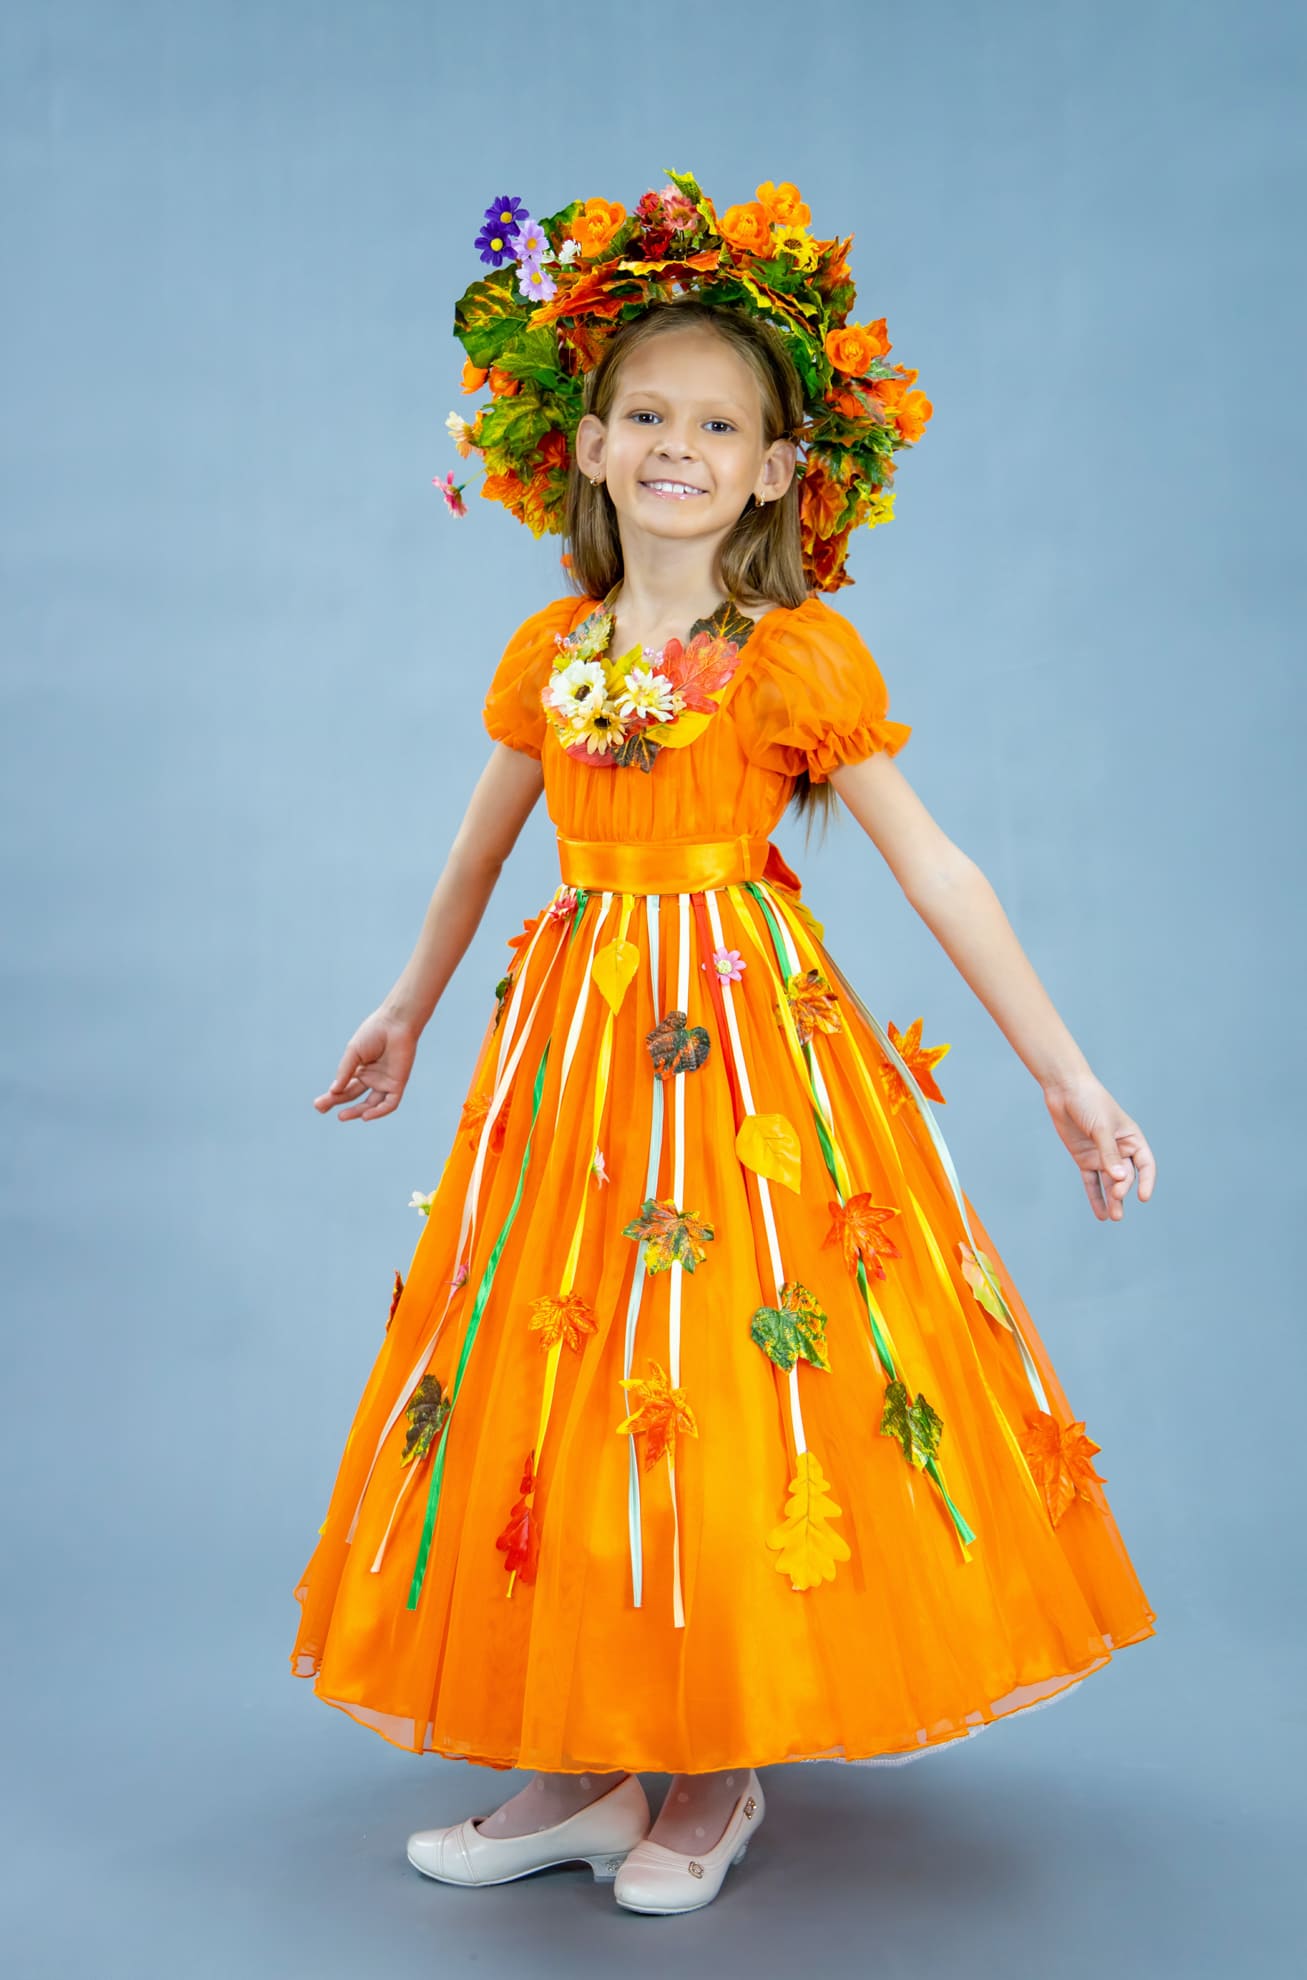 Детское платье на утренник осень № - купить в Украине на горыныч45.рф